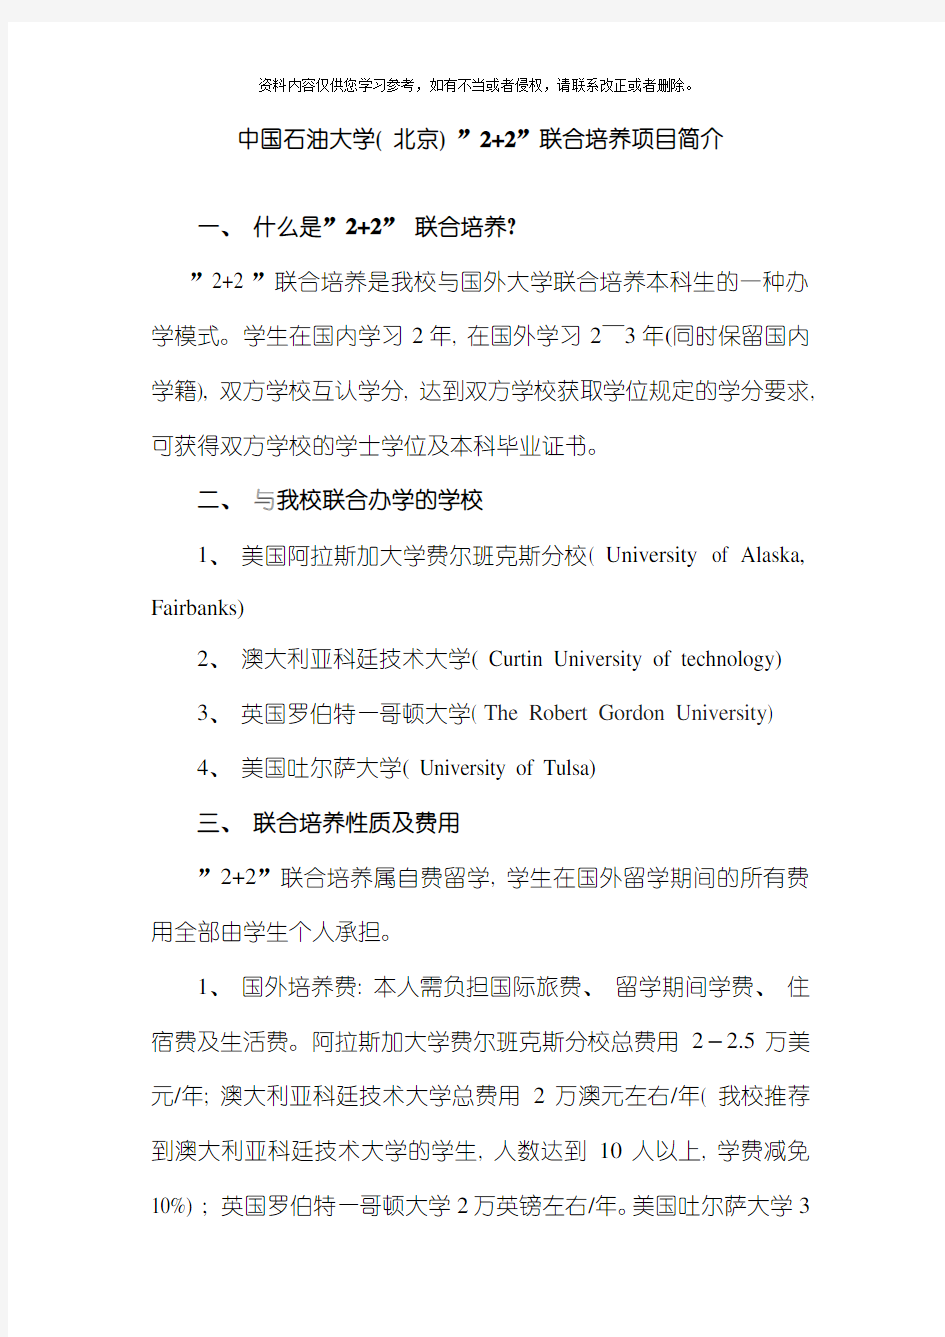 中国石油大学北京联合培养项目简介模板